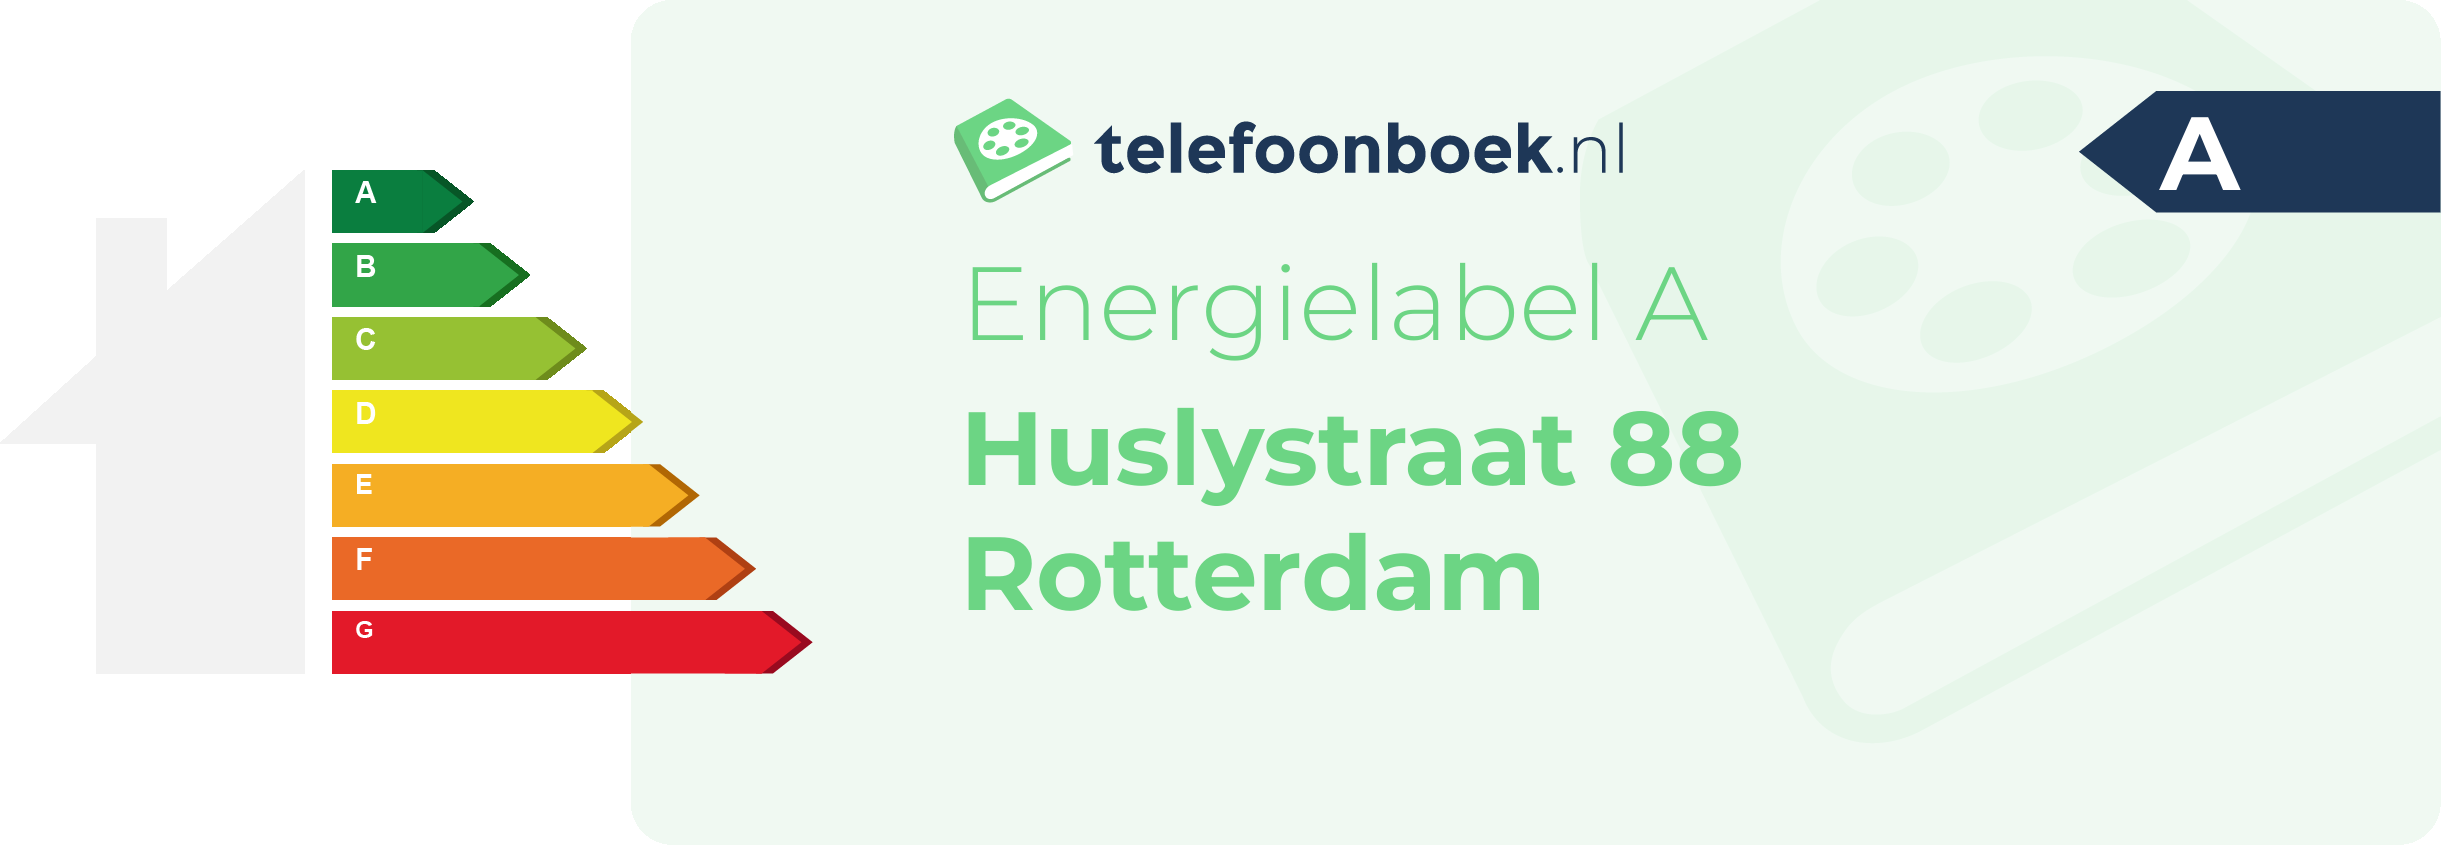 Energielabel Huslystraat 88 Rotterdam